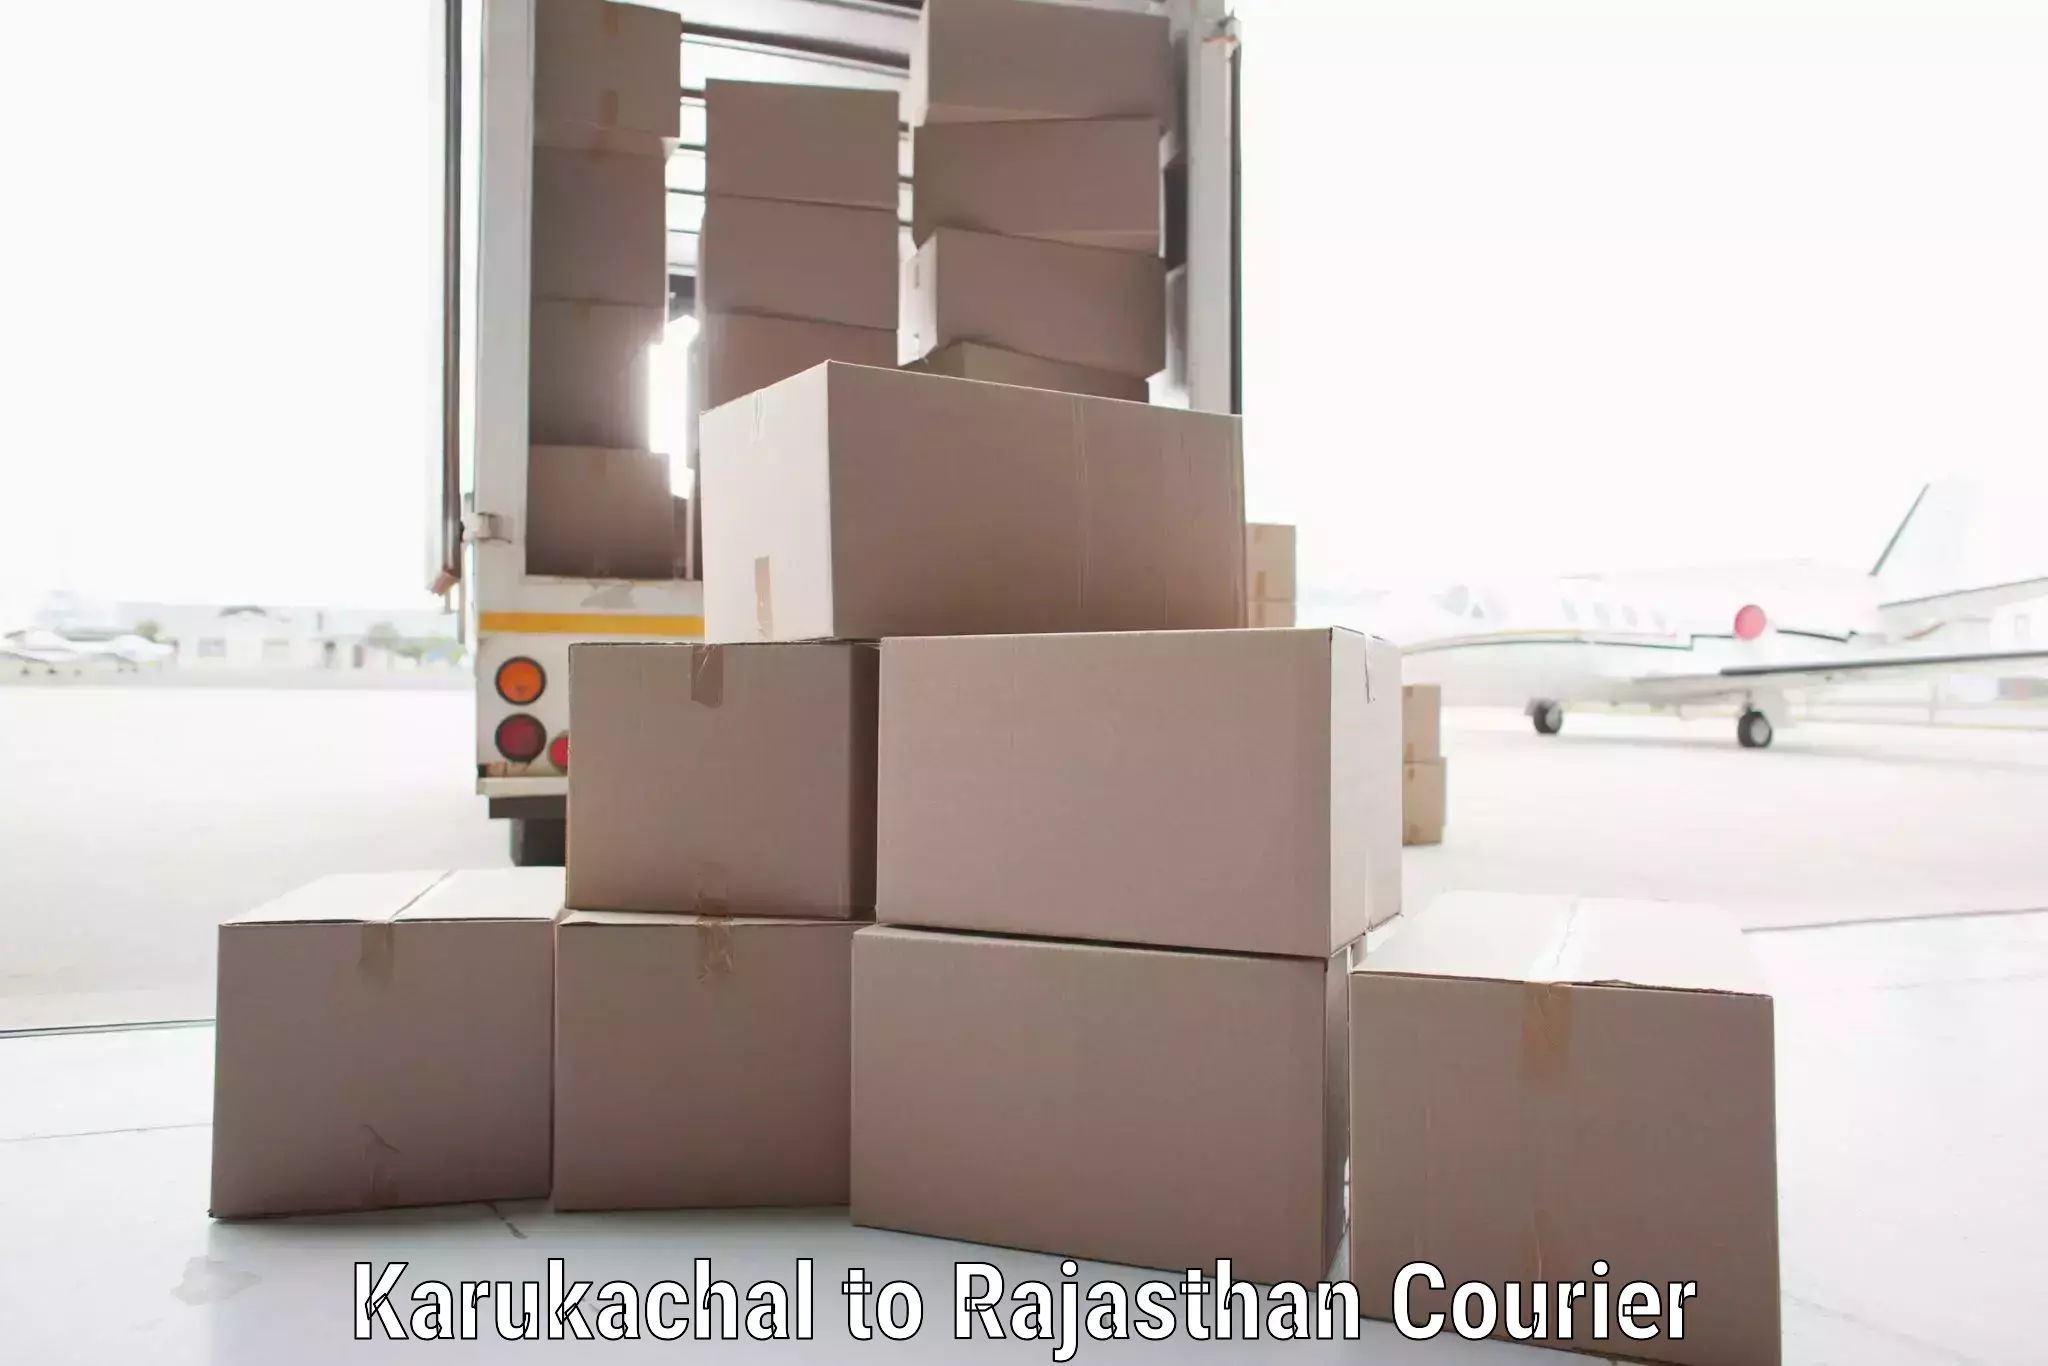 Express package handling Karukachal to Rajasthan